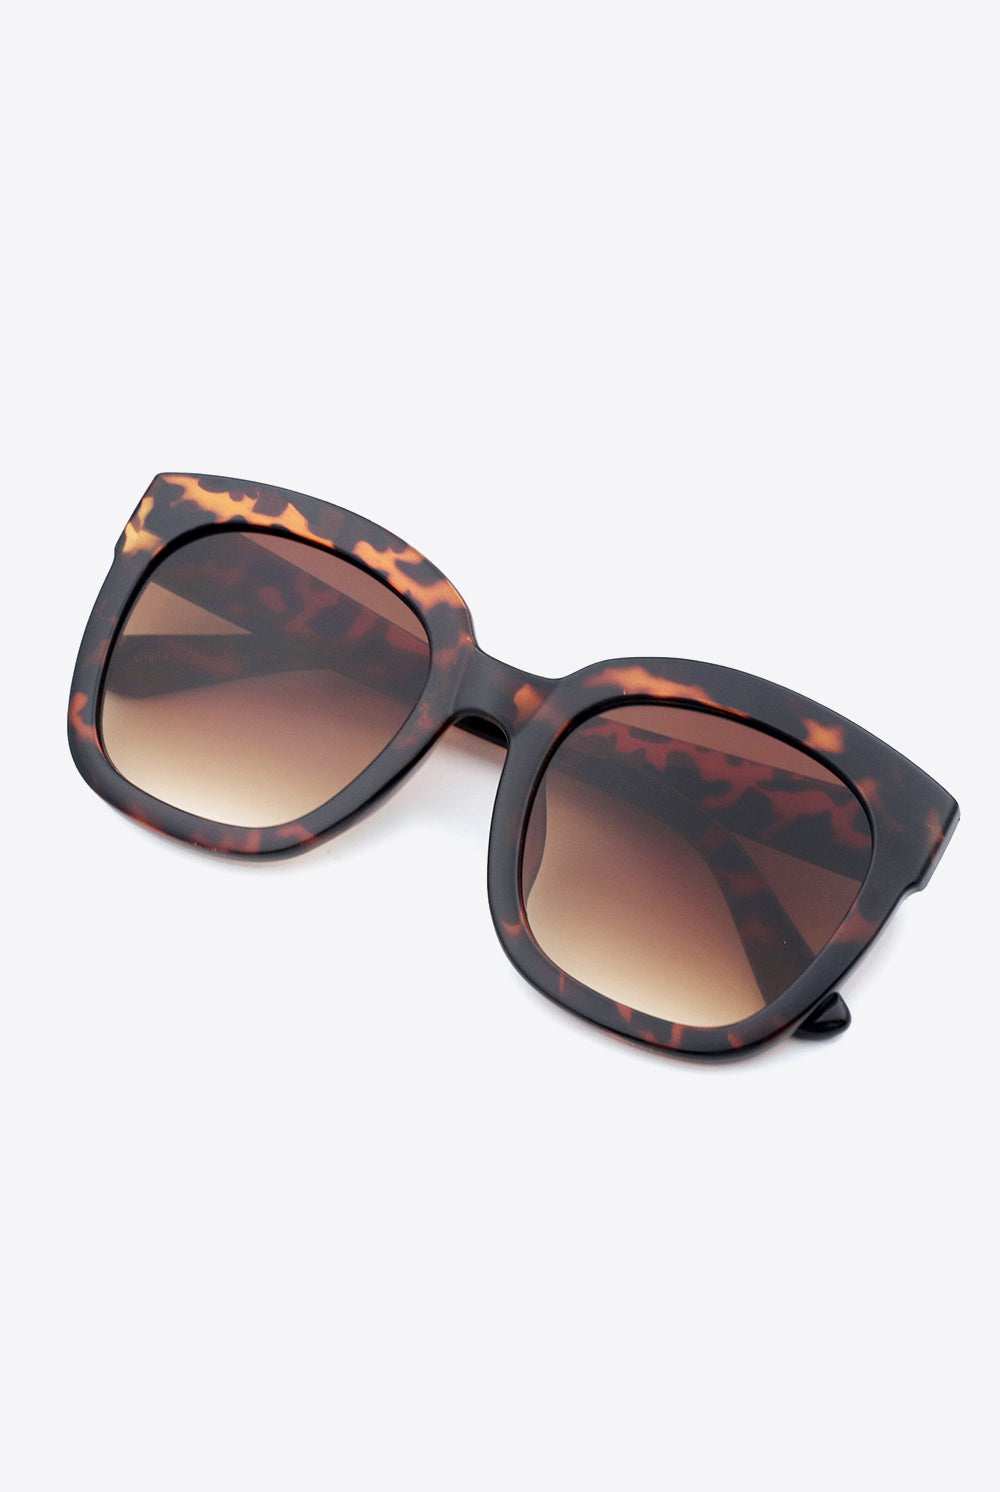 White Smoke Polycarbonate Frame Square Sunglasses Accessories